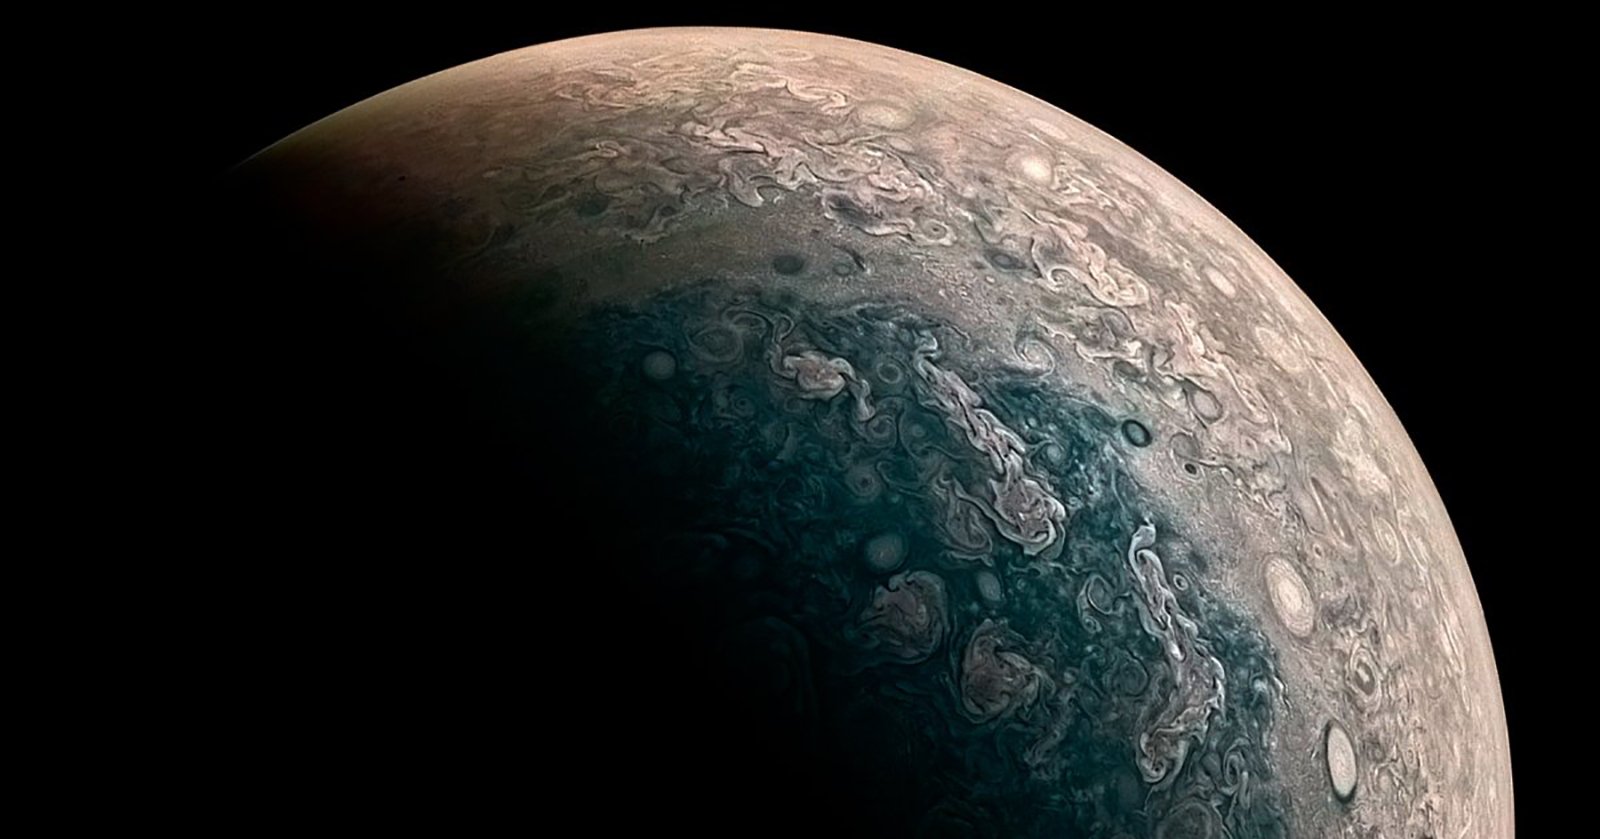 NASAs $1 Billion Juno Probe Sends Back Stunning Photos of Jupiters Poles